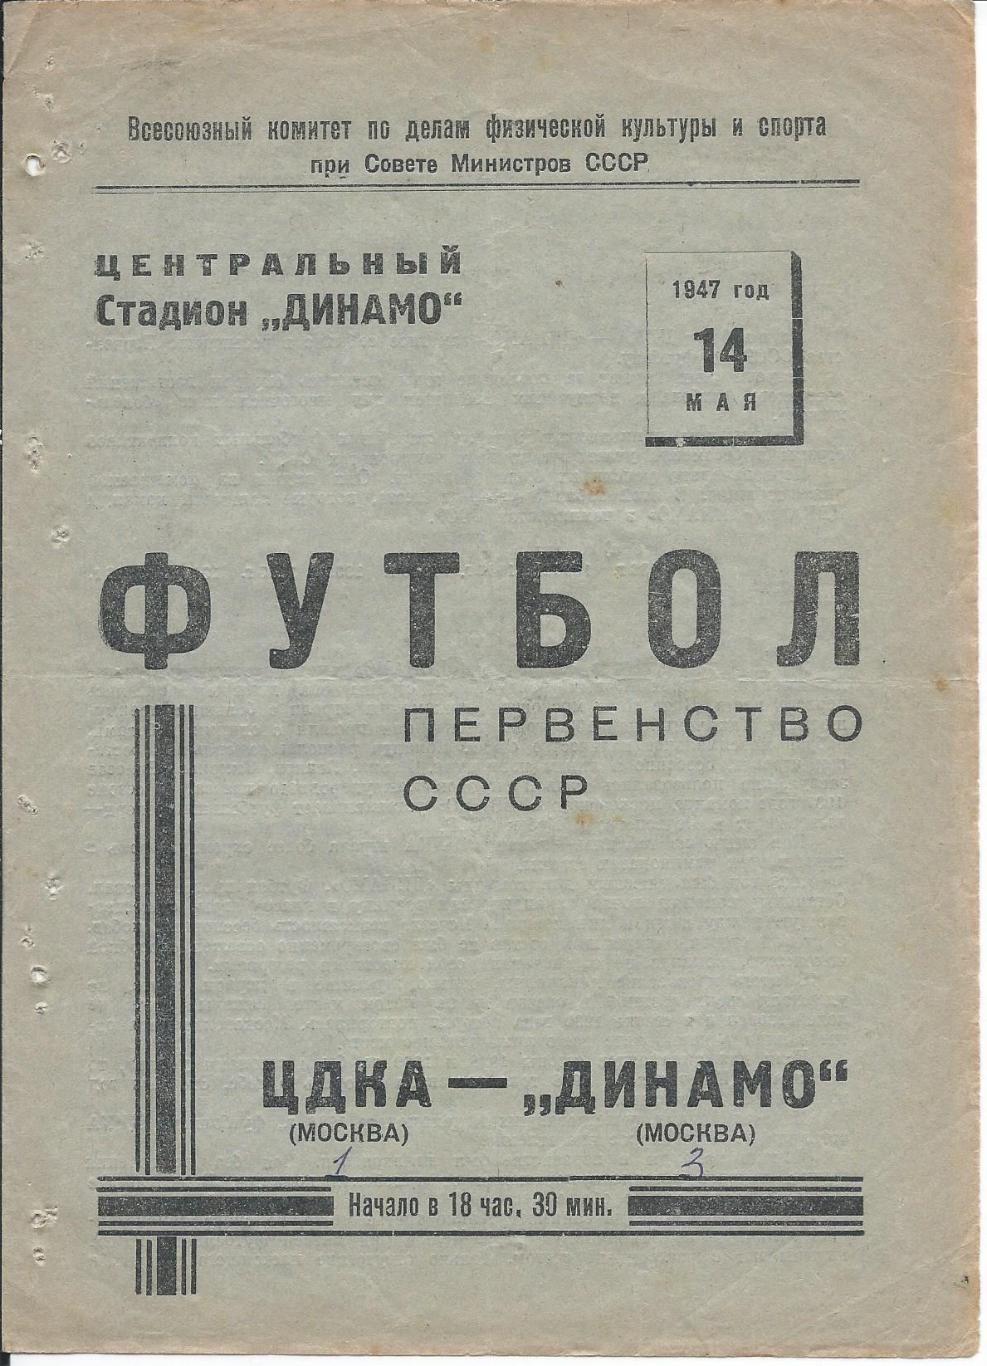 ЦДКА - Динамо Москва 14 мая 1947